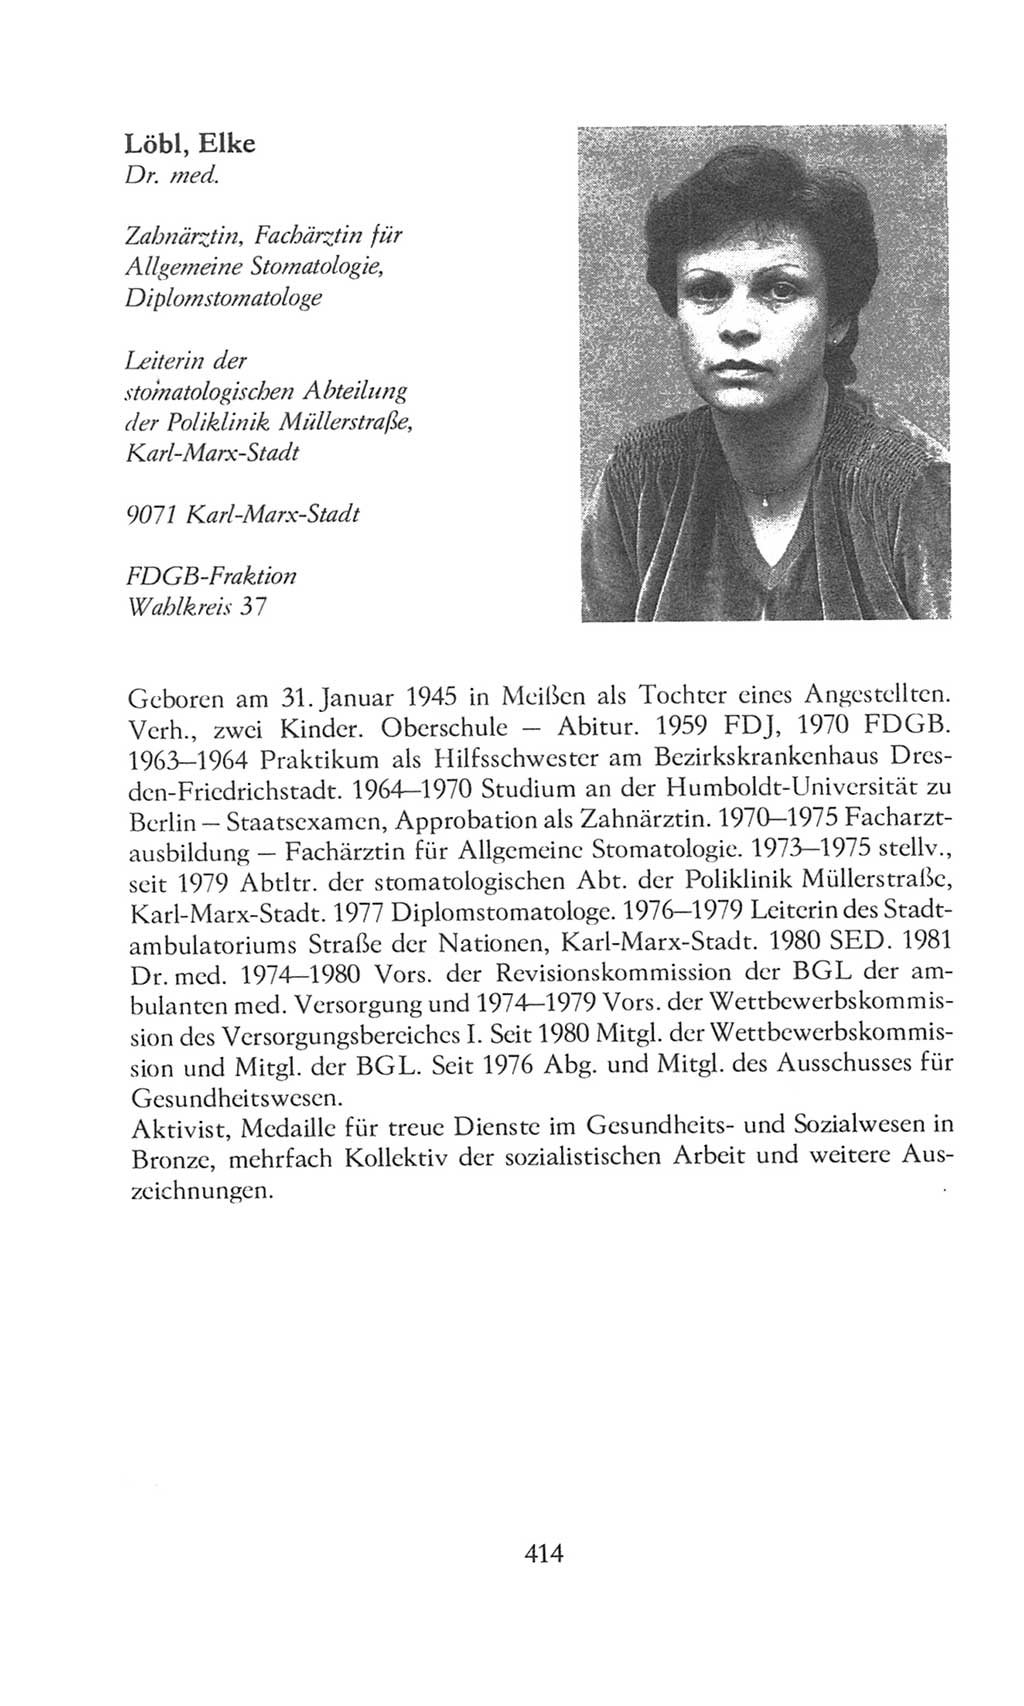 Volkskammer (VK) der Deutschen Demokratischen Republik (DDR), 8. Wahlperiode 1981-1986, Seite 414 (VK. DDR 8. WP. 1981-1986, S. 414)